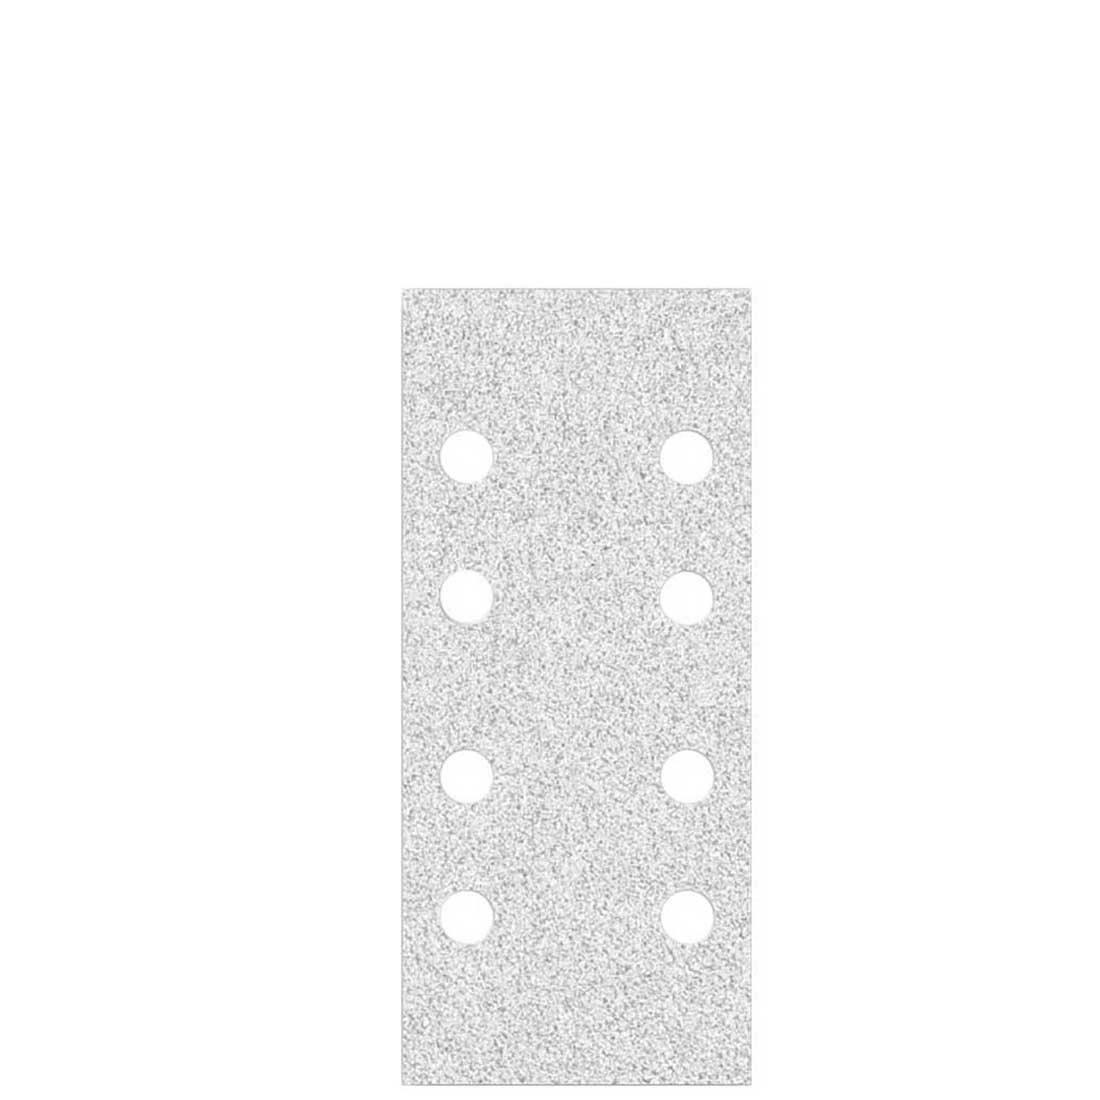 MioTools Klett-Schleifblätter für Schwingschleifer, K40–400, 186 x 93 mm / 8-Loch / Korund mit Stearat